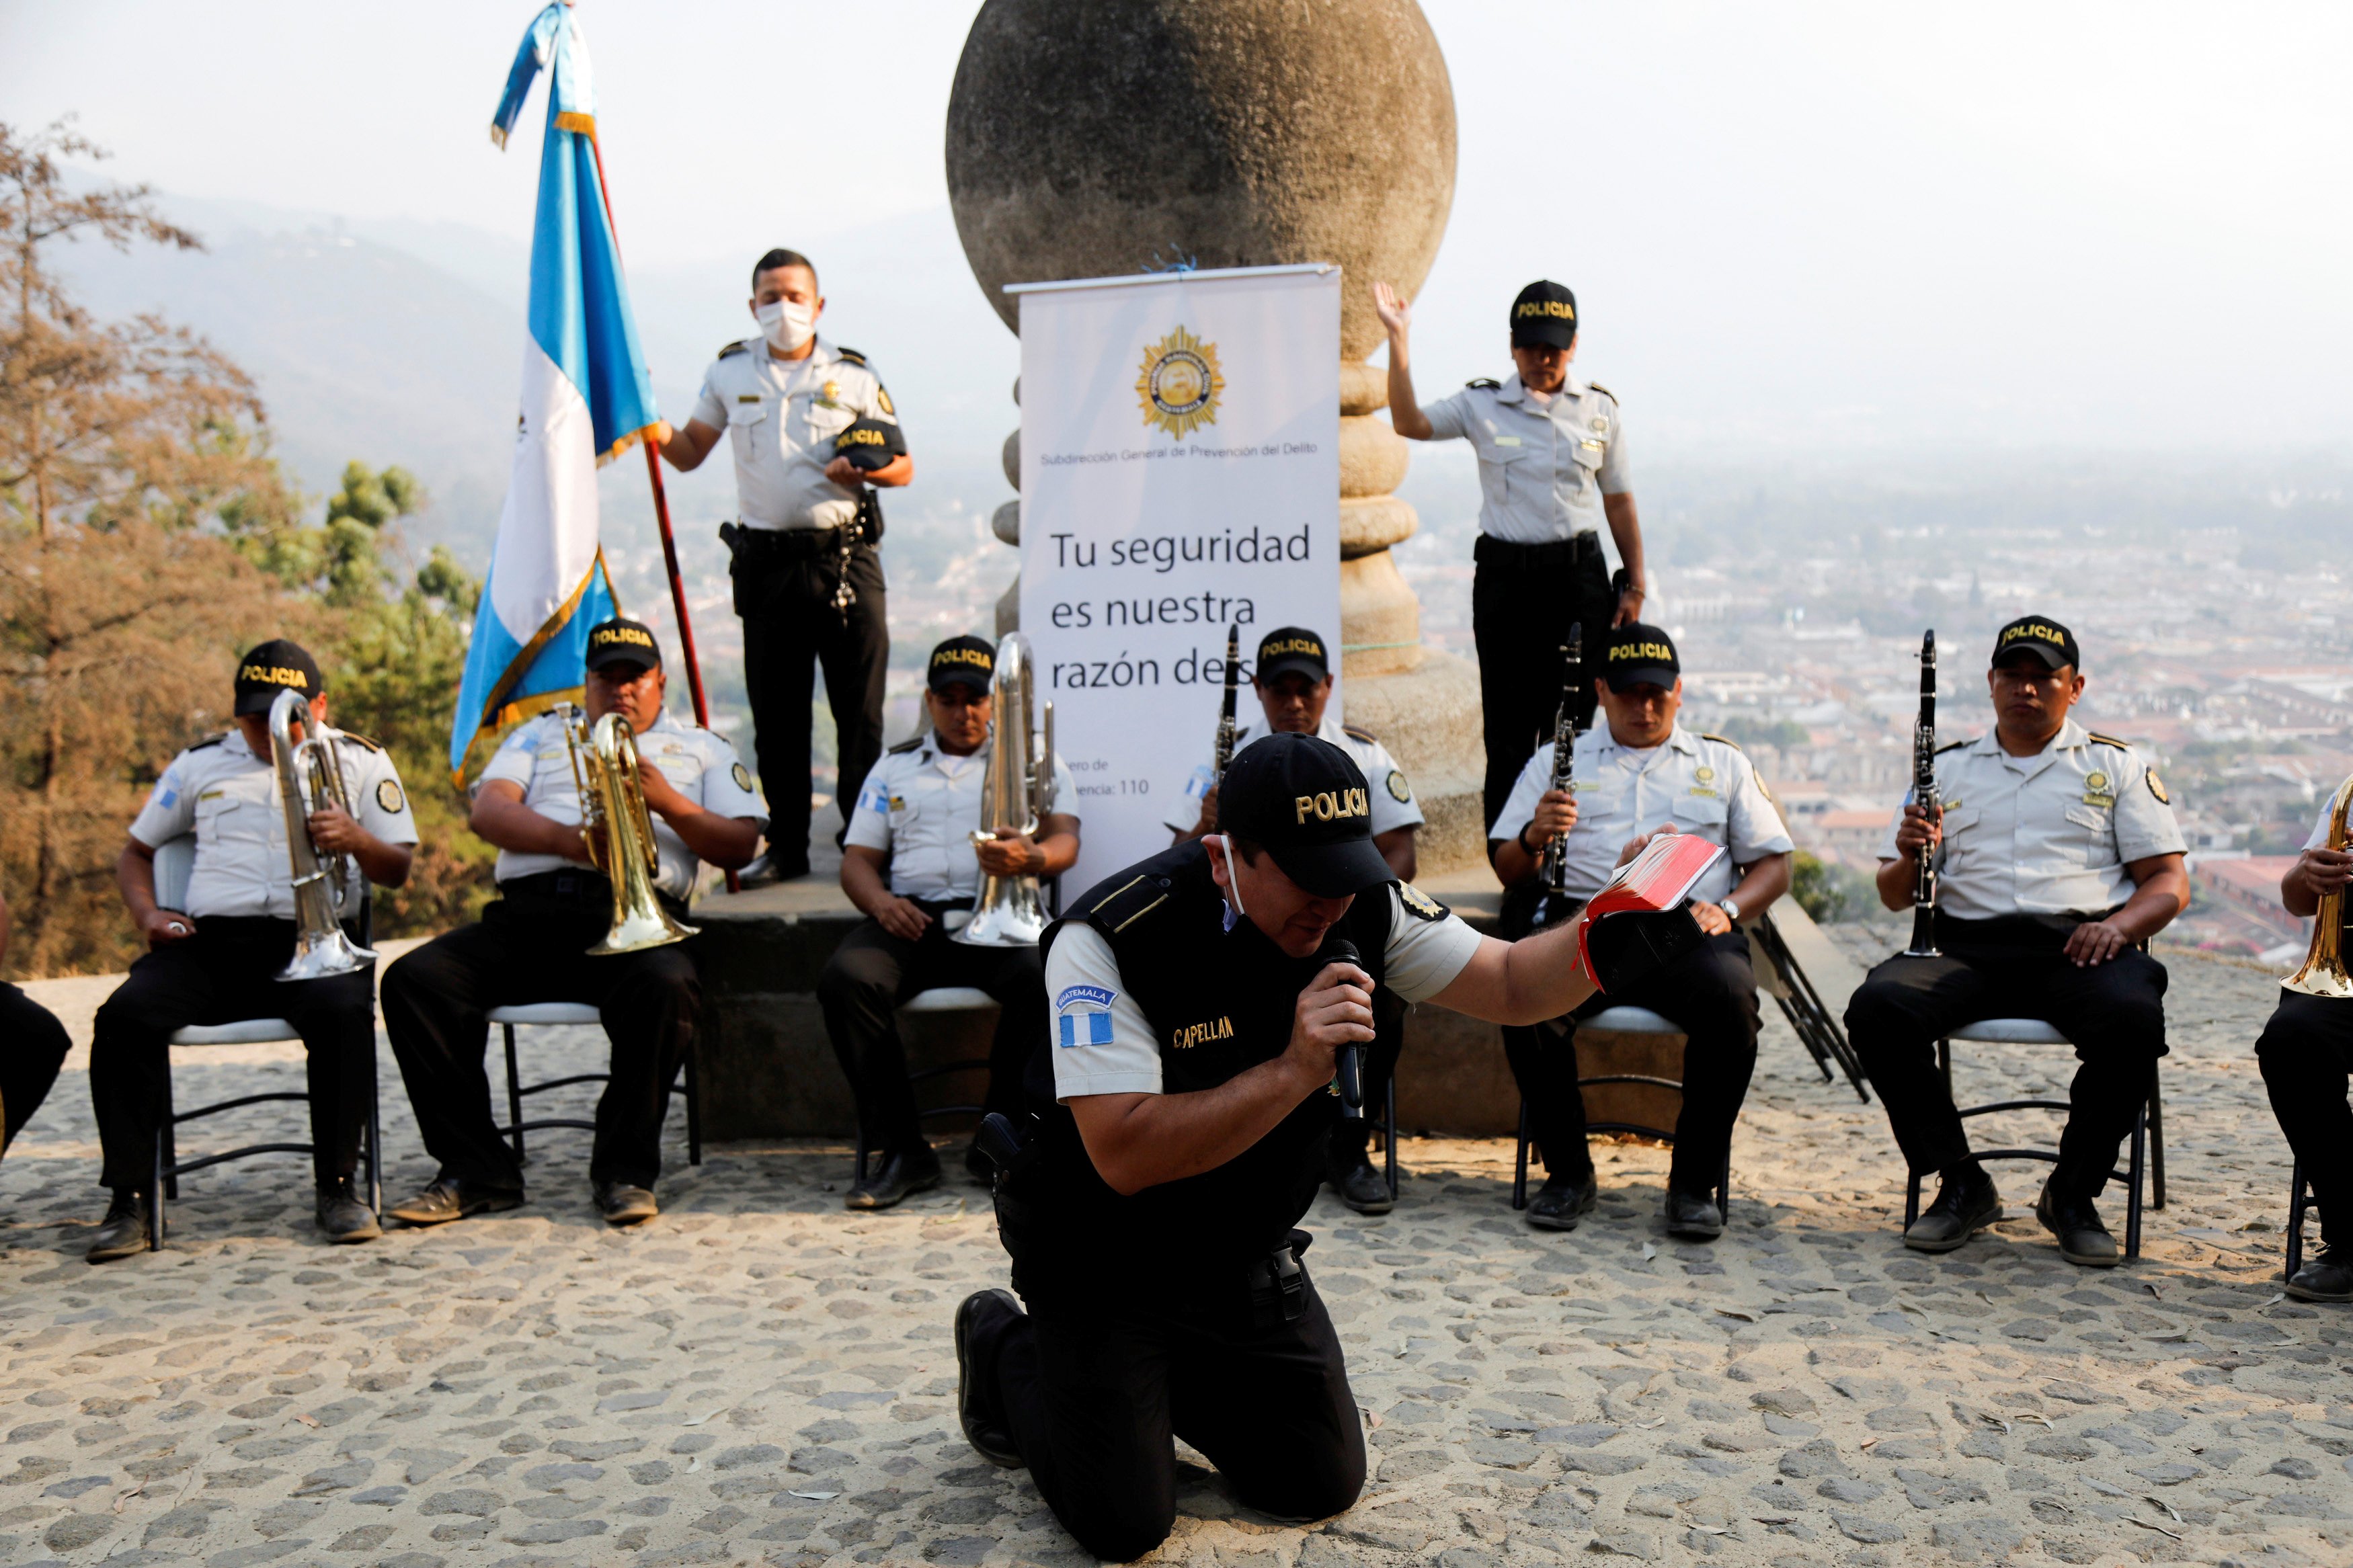 ضابط شرطة يصلي أثناء أداء فرقة الشرطة الموسيقية في سيرو دي لا كروز  في مدينة جواتيمالا